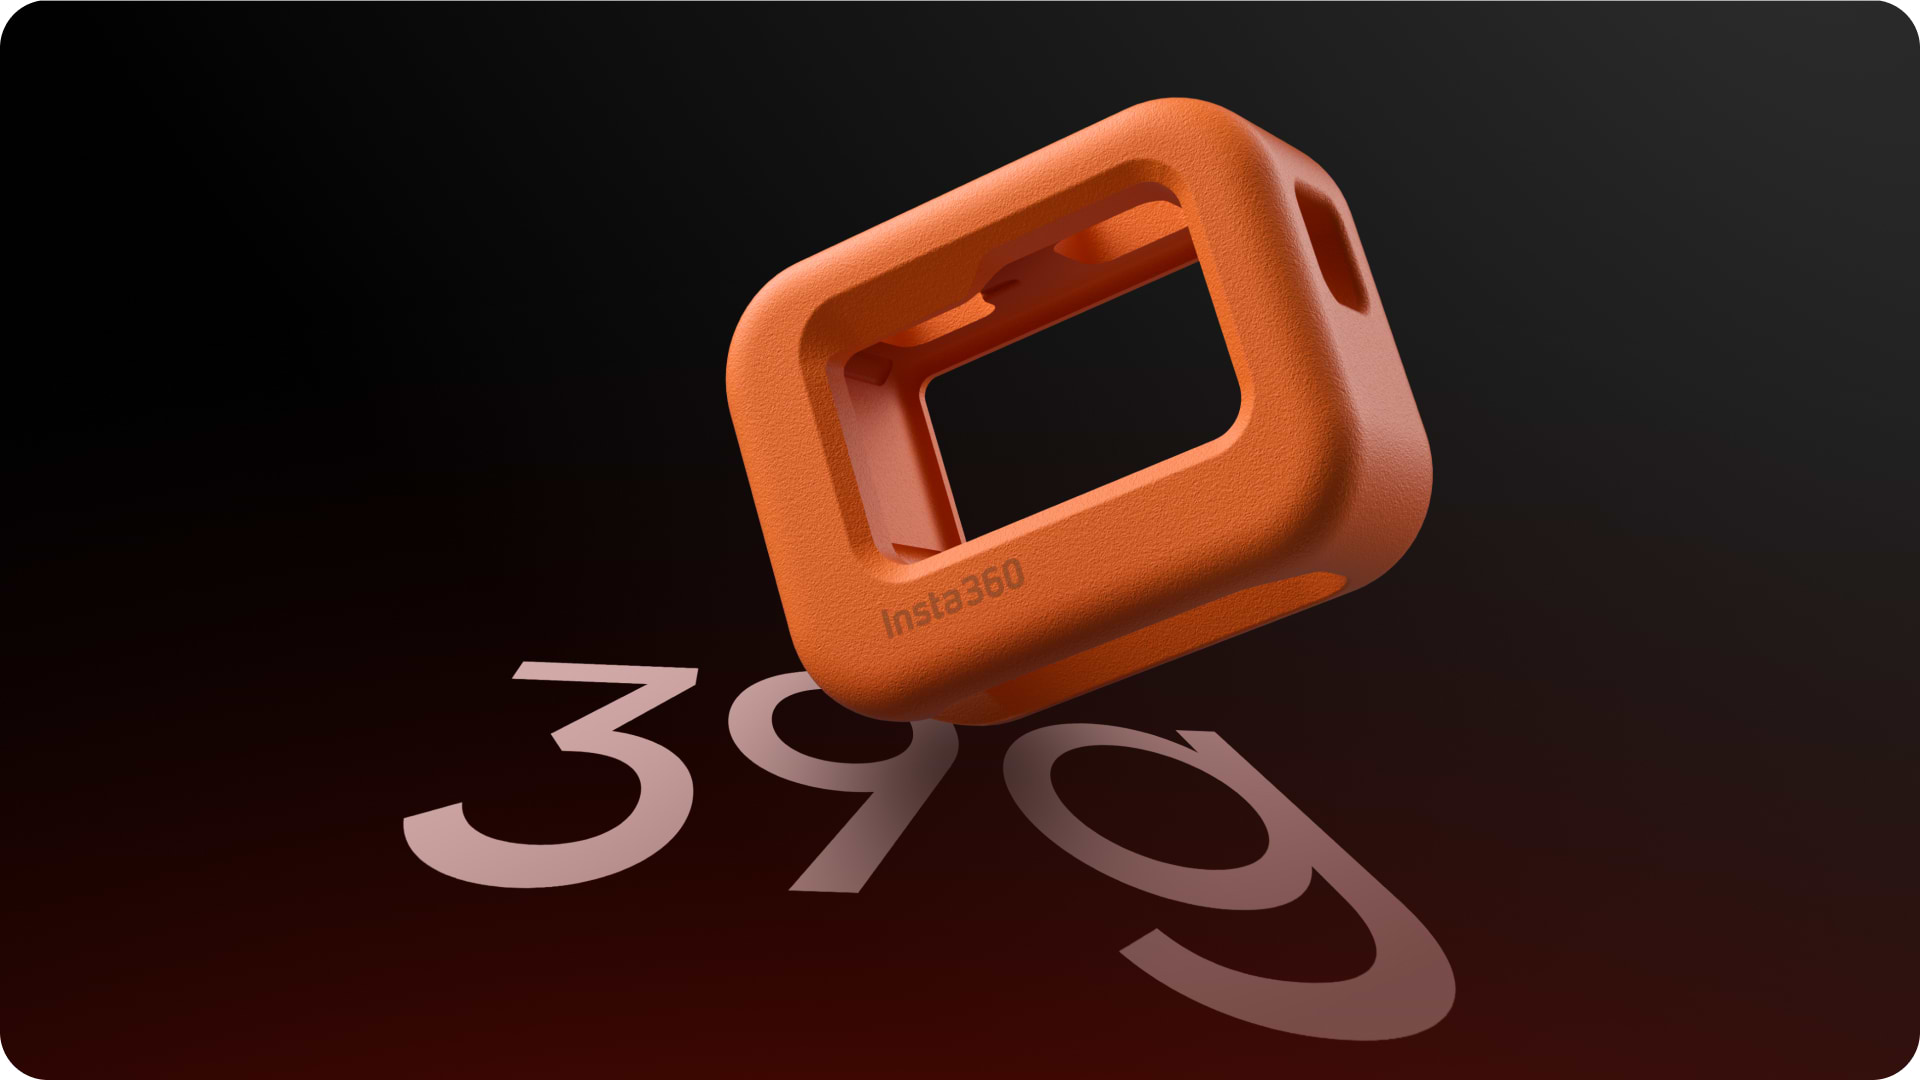 מצוף למצלמות Insta360 Ace/Ace Pro - צבע כתום שנה אחריות ע"י היבואן הרשמי